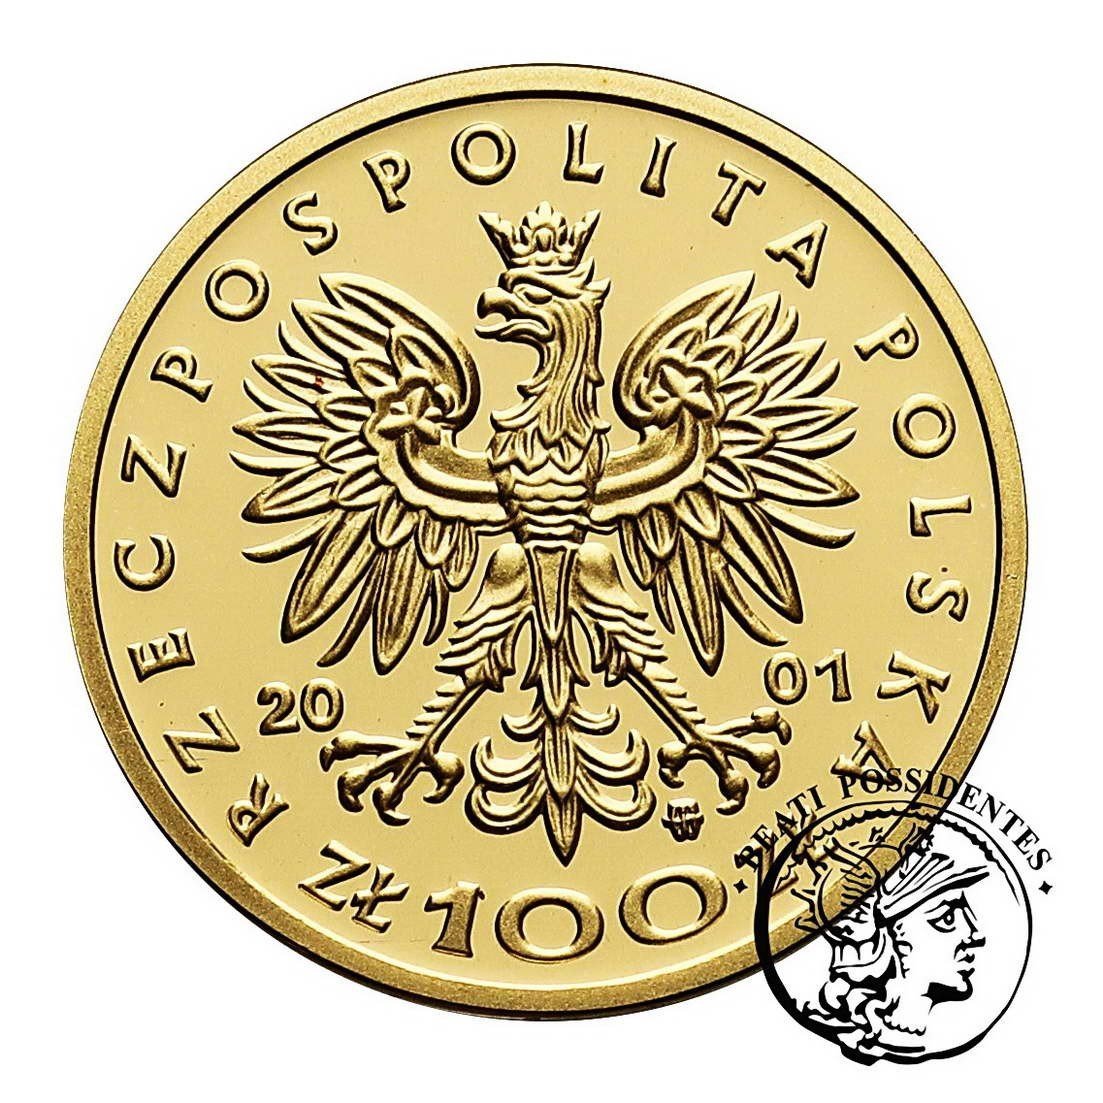 Polska III RP 100 złotych 2000 Bolesław Krzywousty st. L